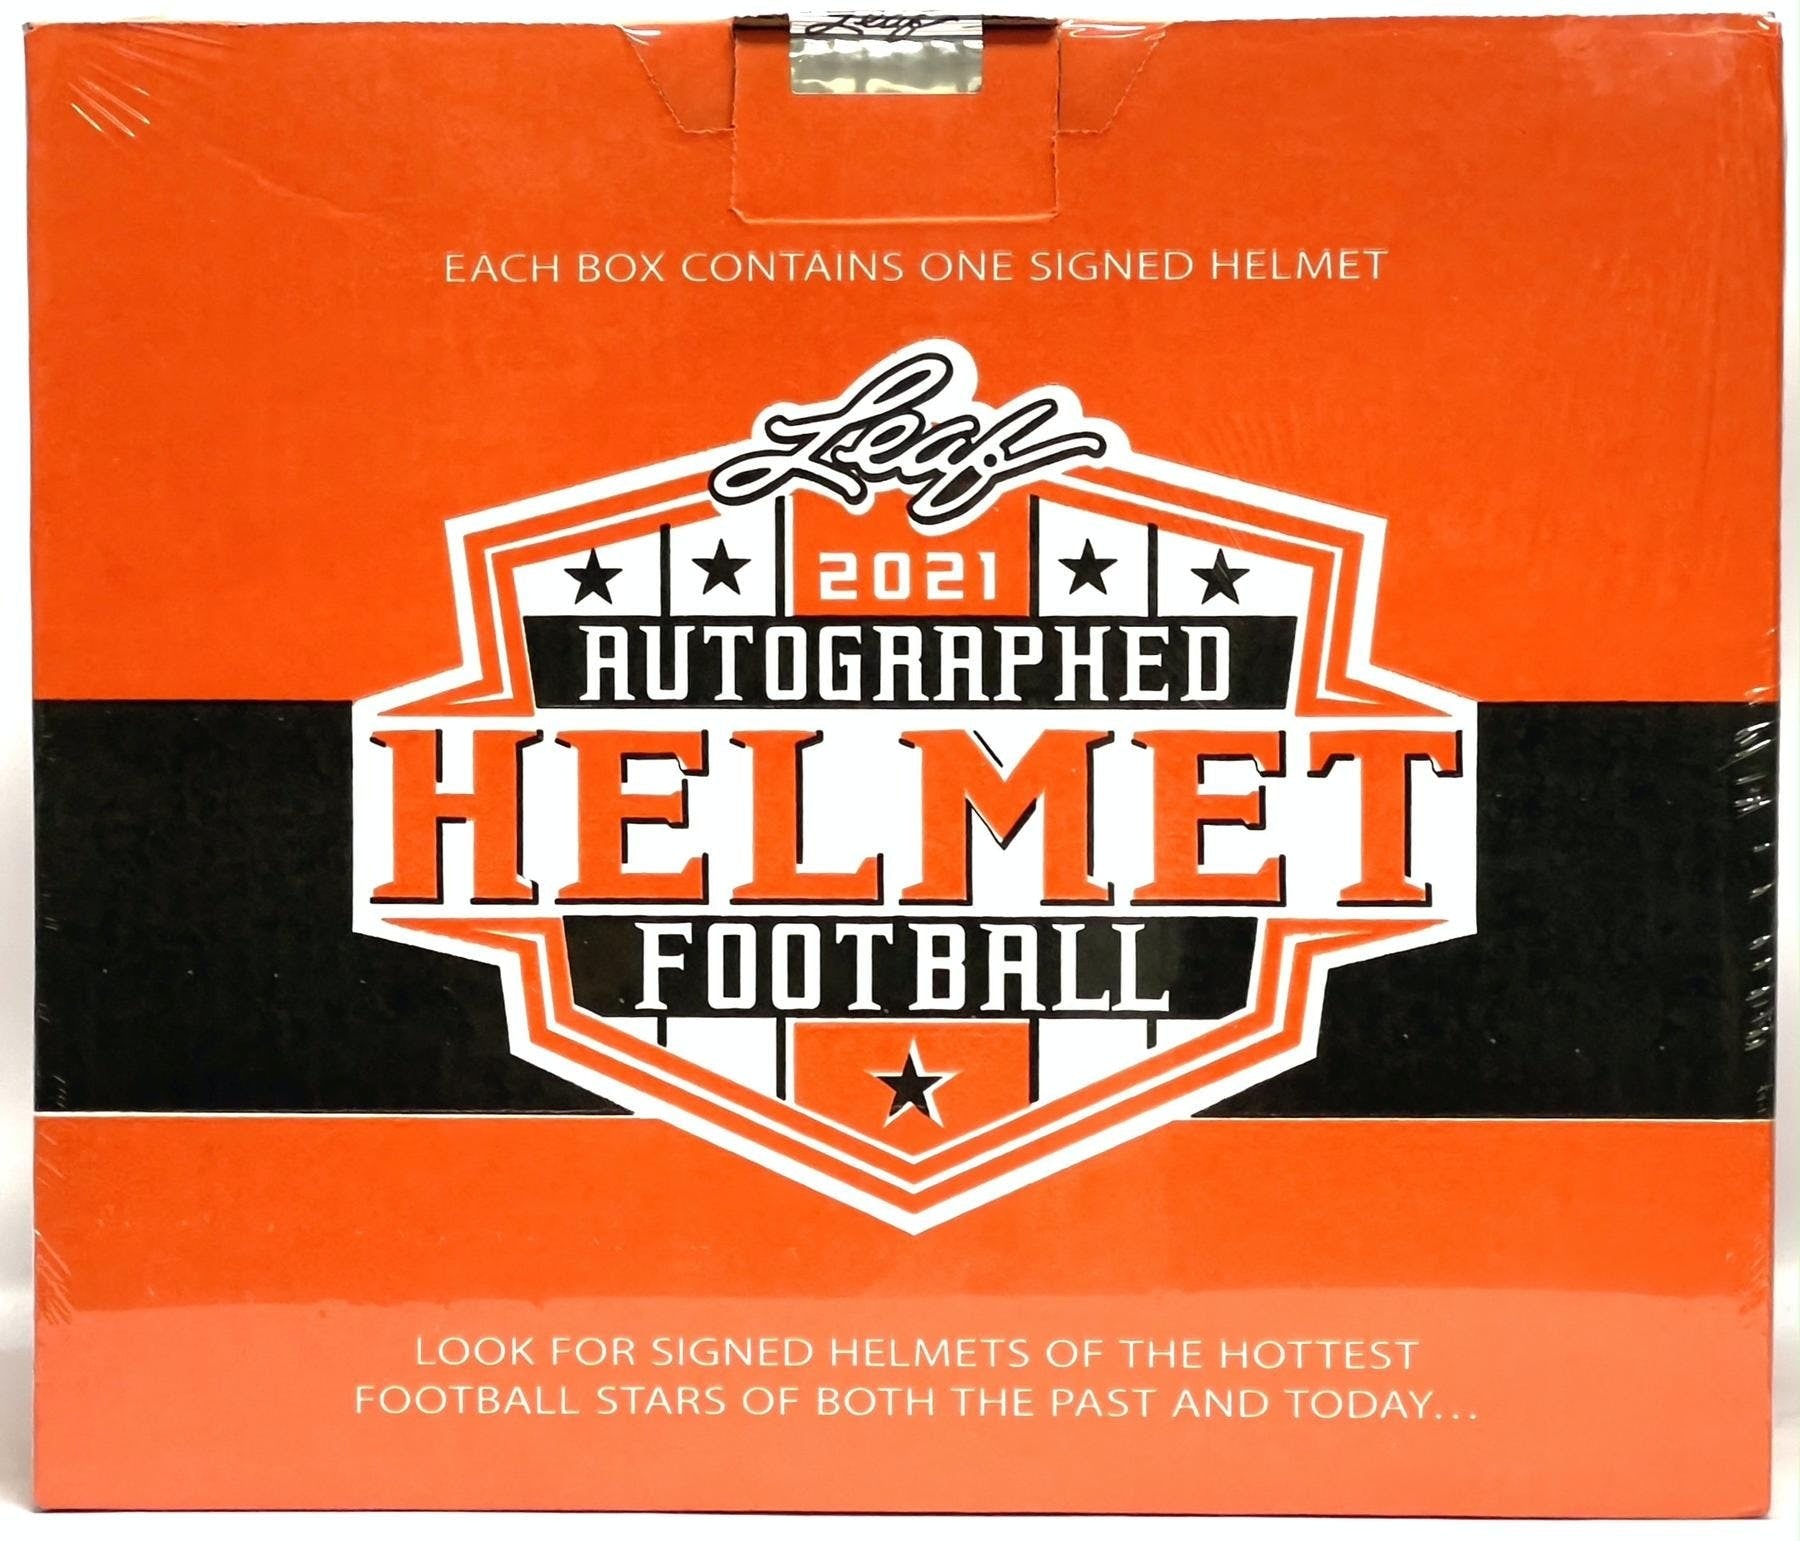 Fanatics Authentic 2023 Under Wraps Single Autographed NFL Jersey Box